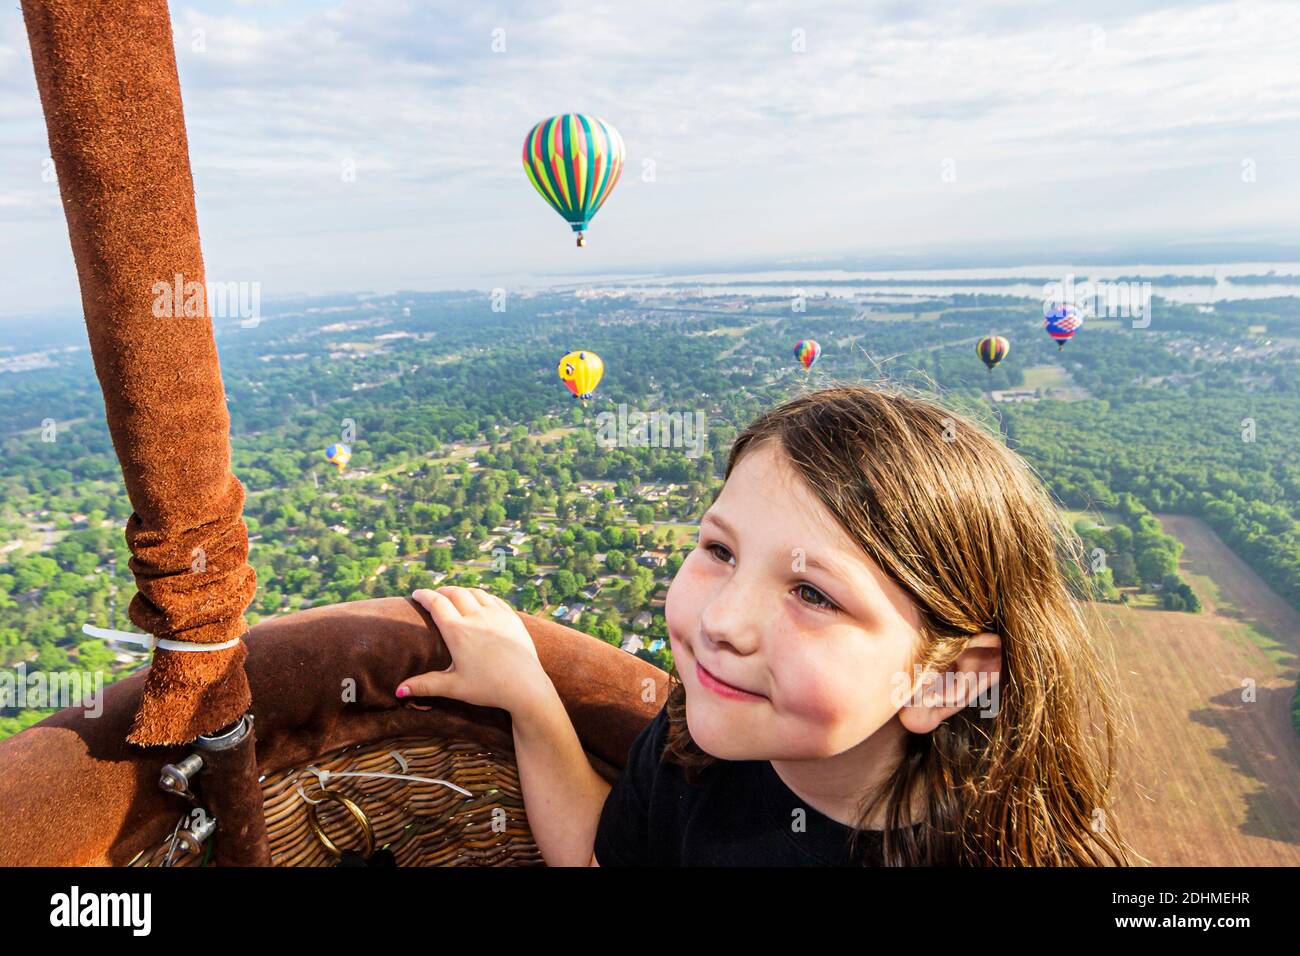 Alabama Decatur Alabama Jubilee Heißluftballon Classic, Luftballons jährliche Event-Ansicht von Gondel Antenne Mädchen Kind, Tennessee River, Stockfoto